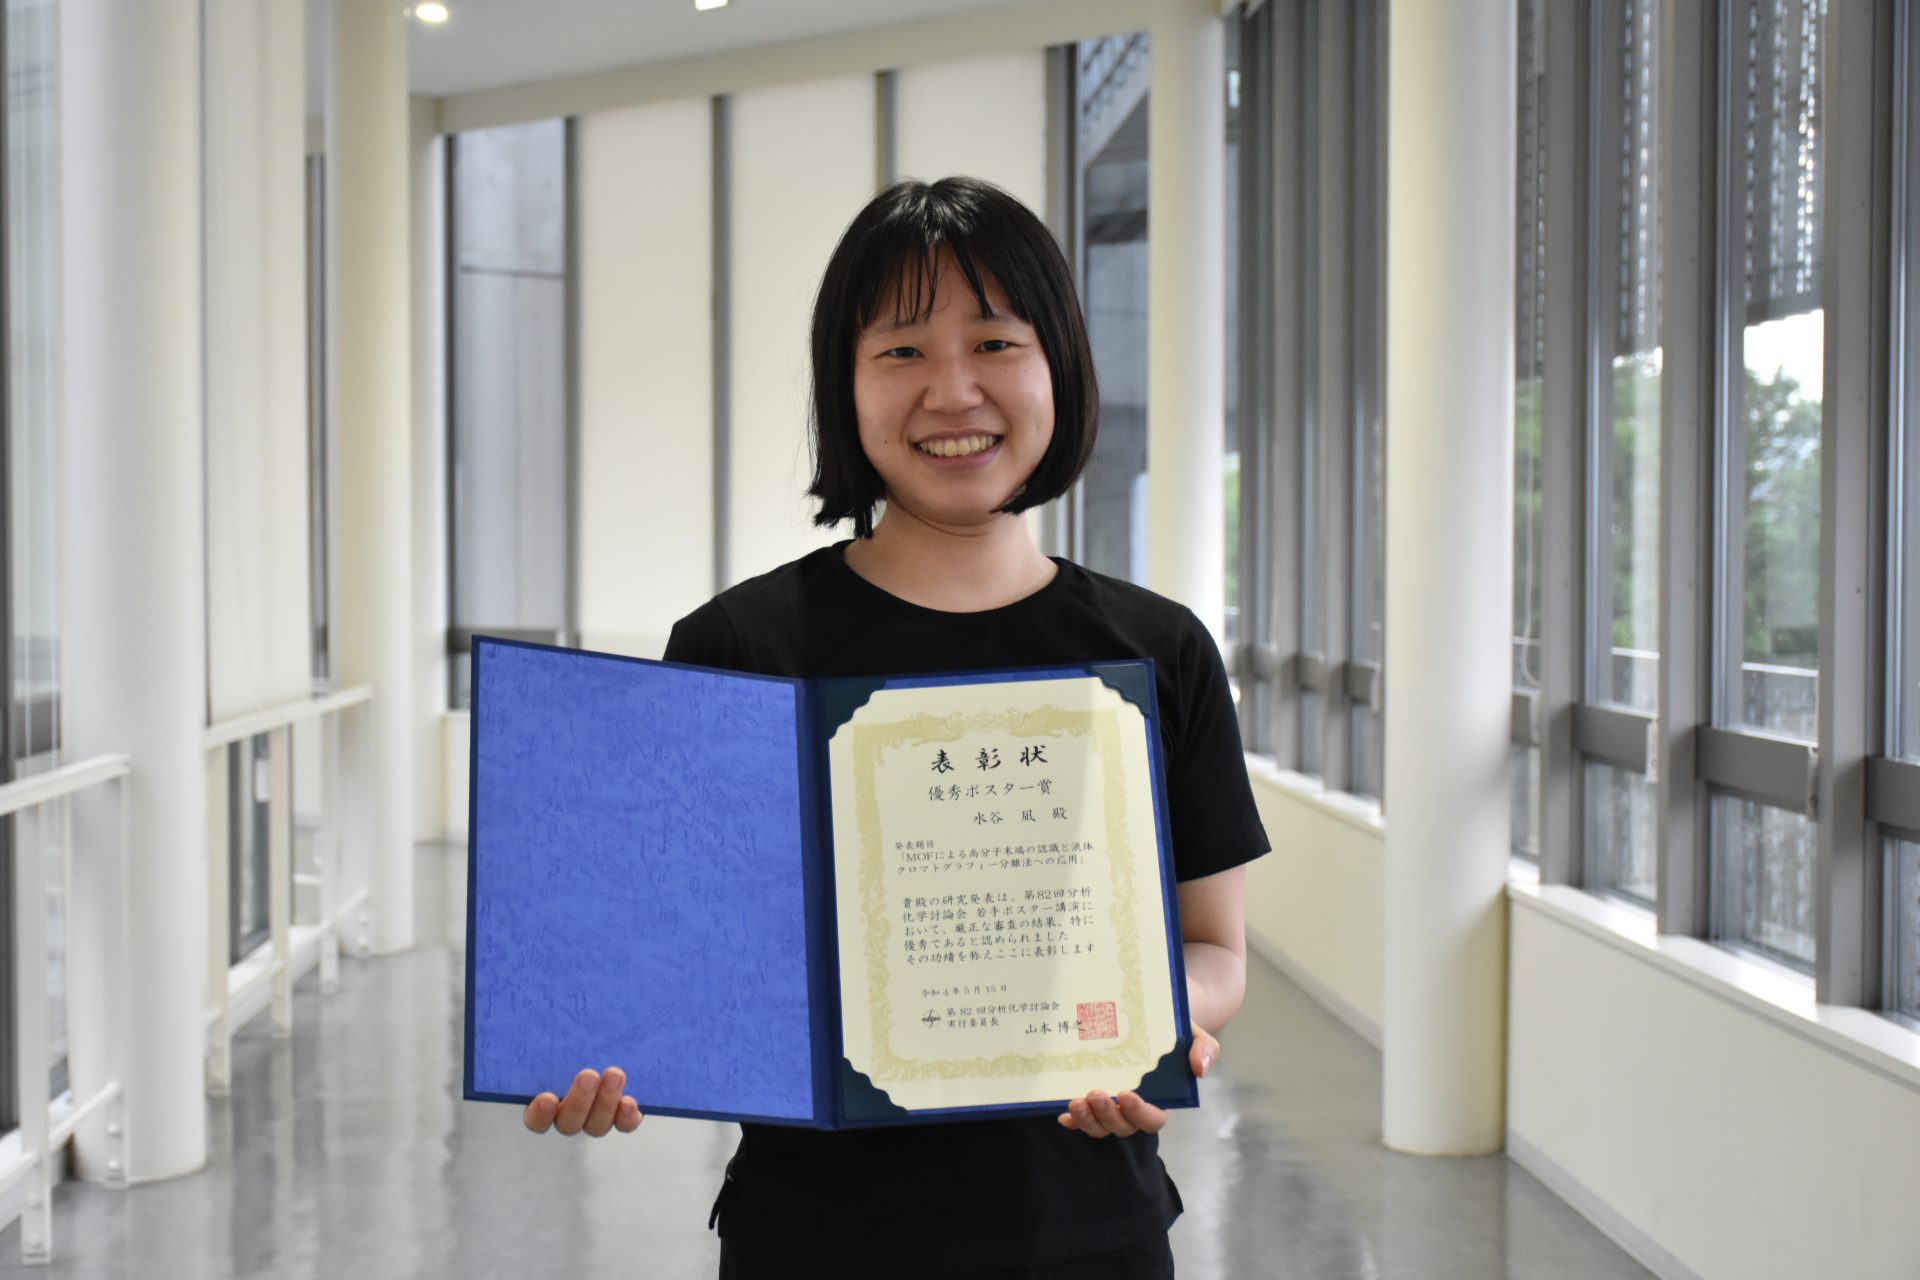 Mizutani won the poster presentation award at 82th JSAC conference